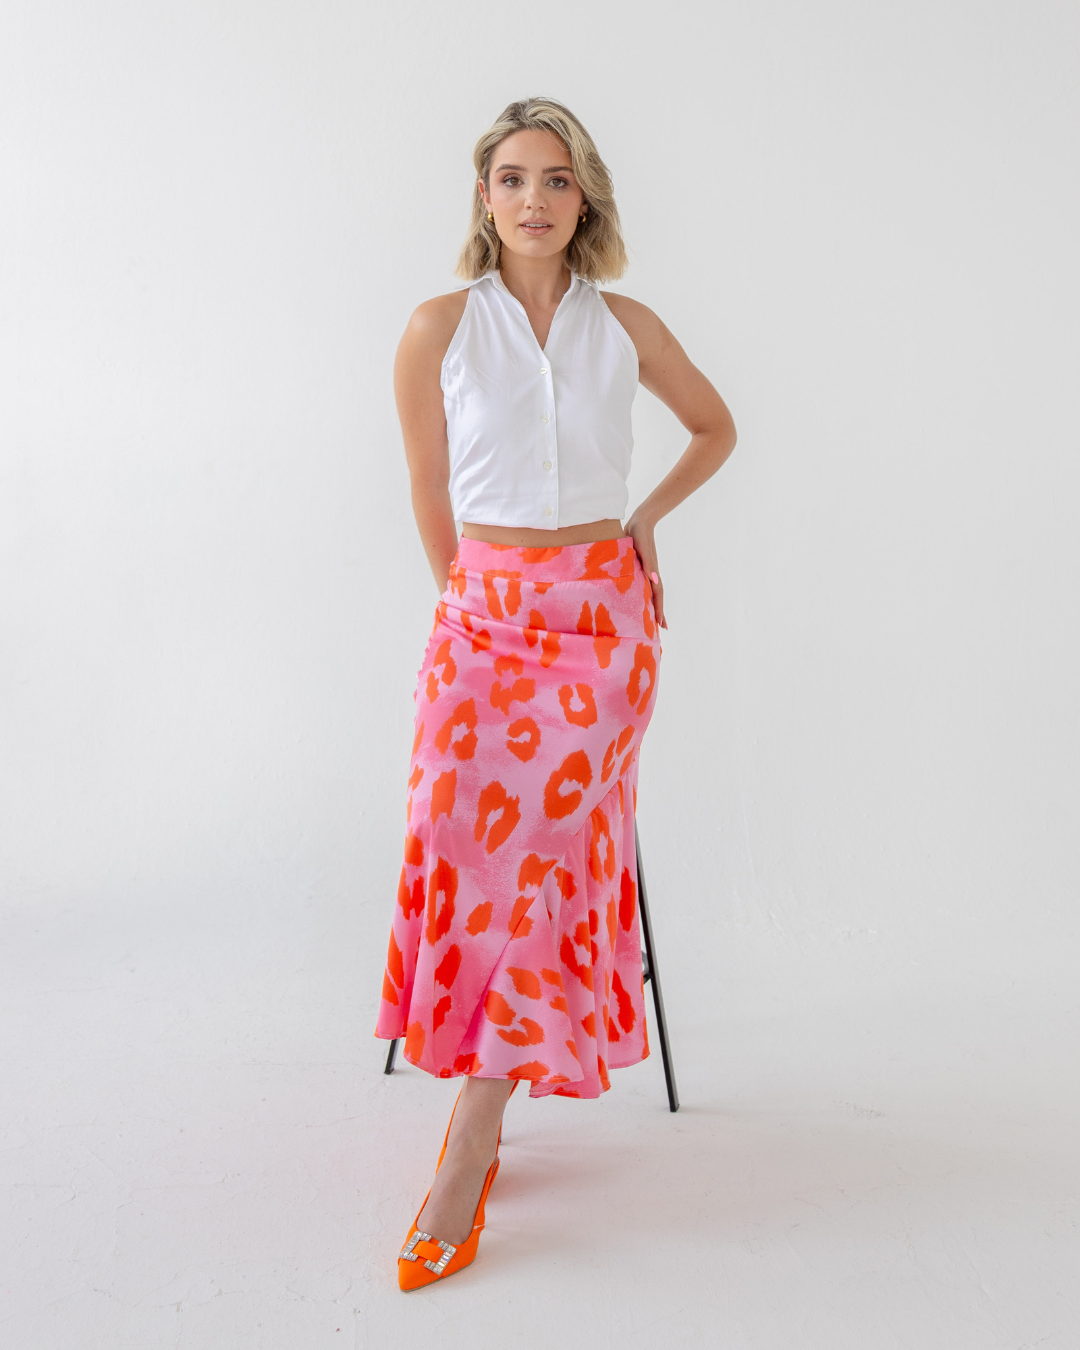 Sassy Pink Animal Print Skirt